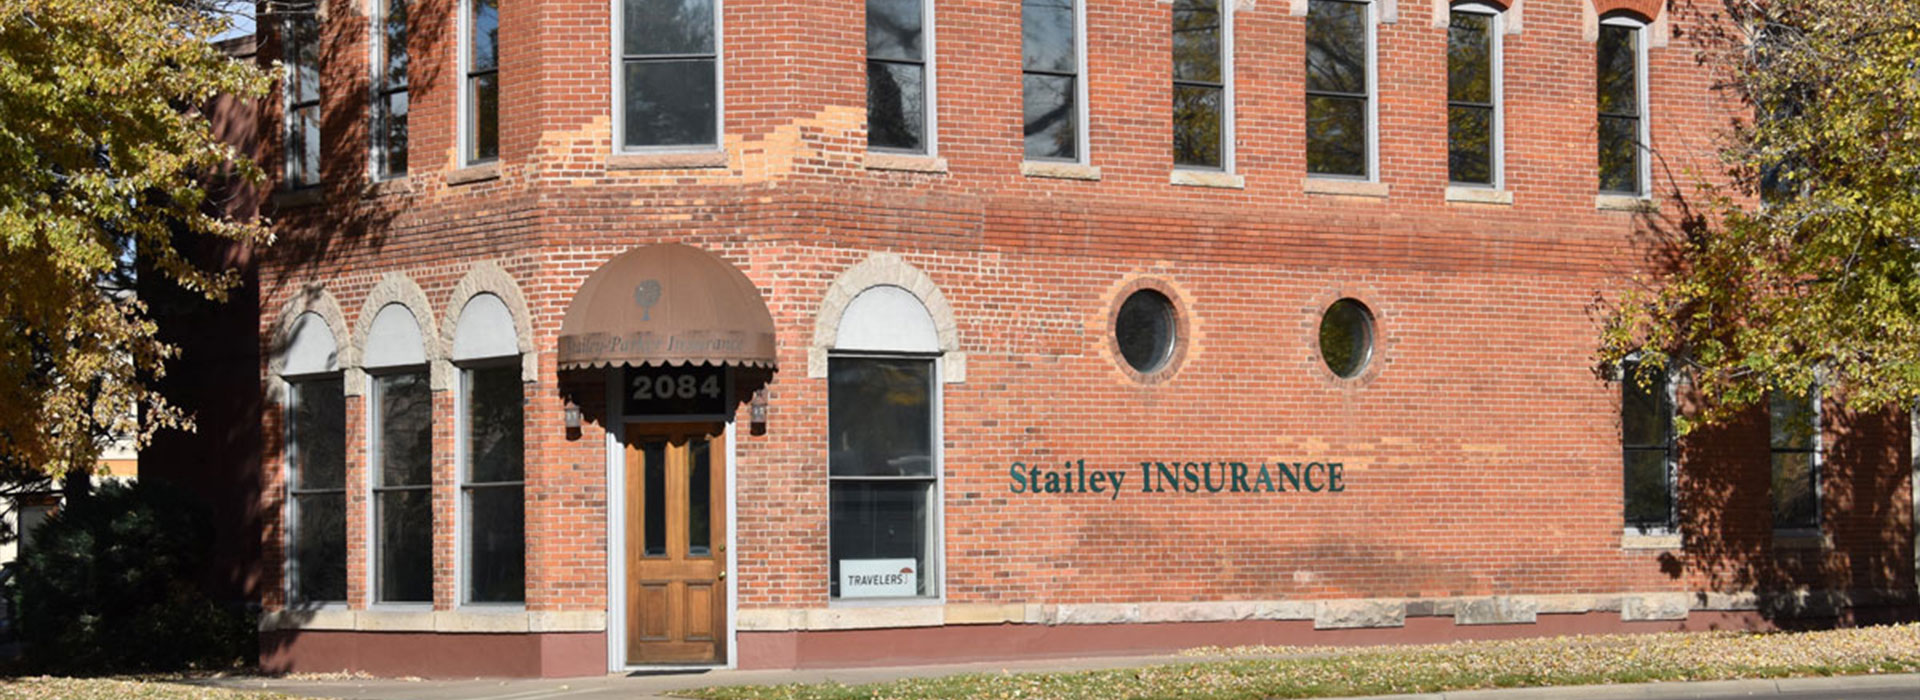 Stailey Insurance building in Denver Colorado